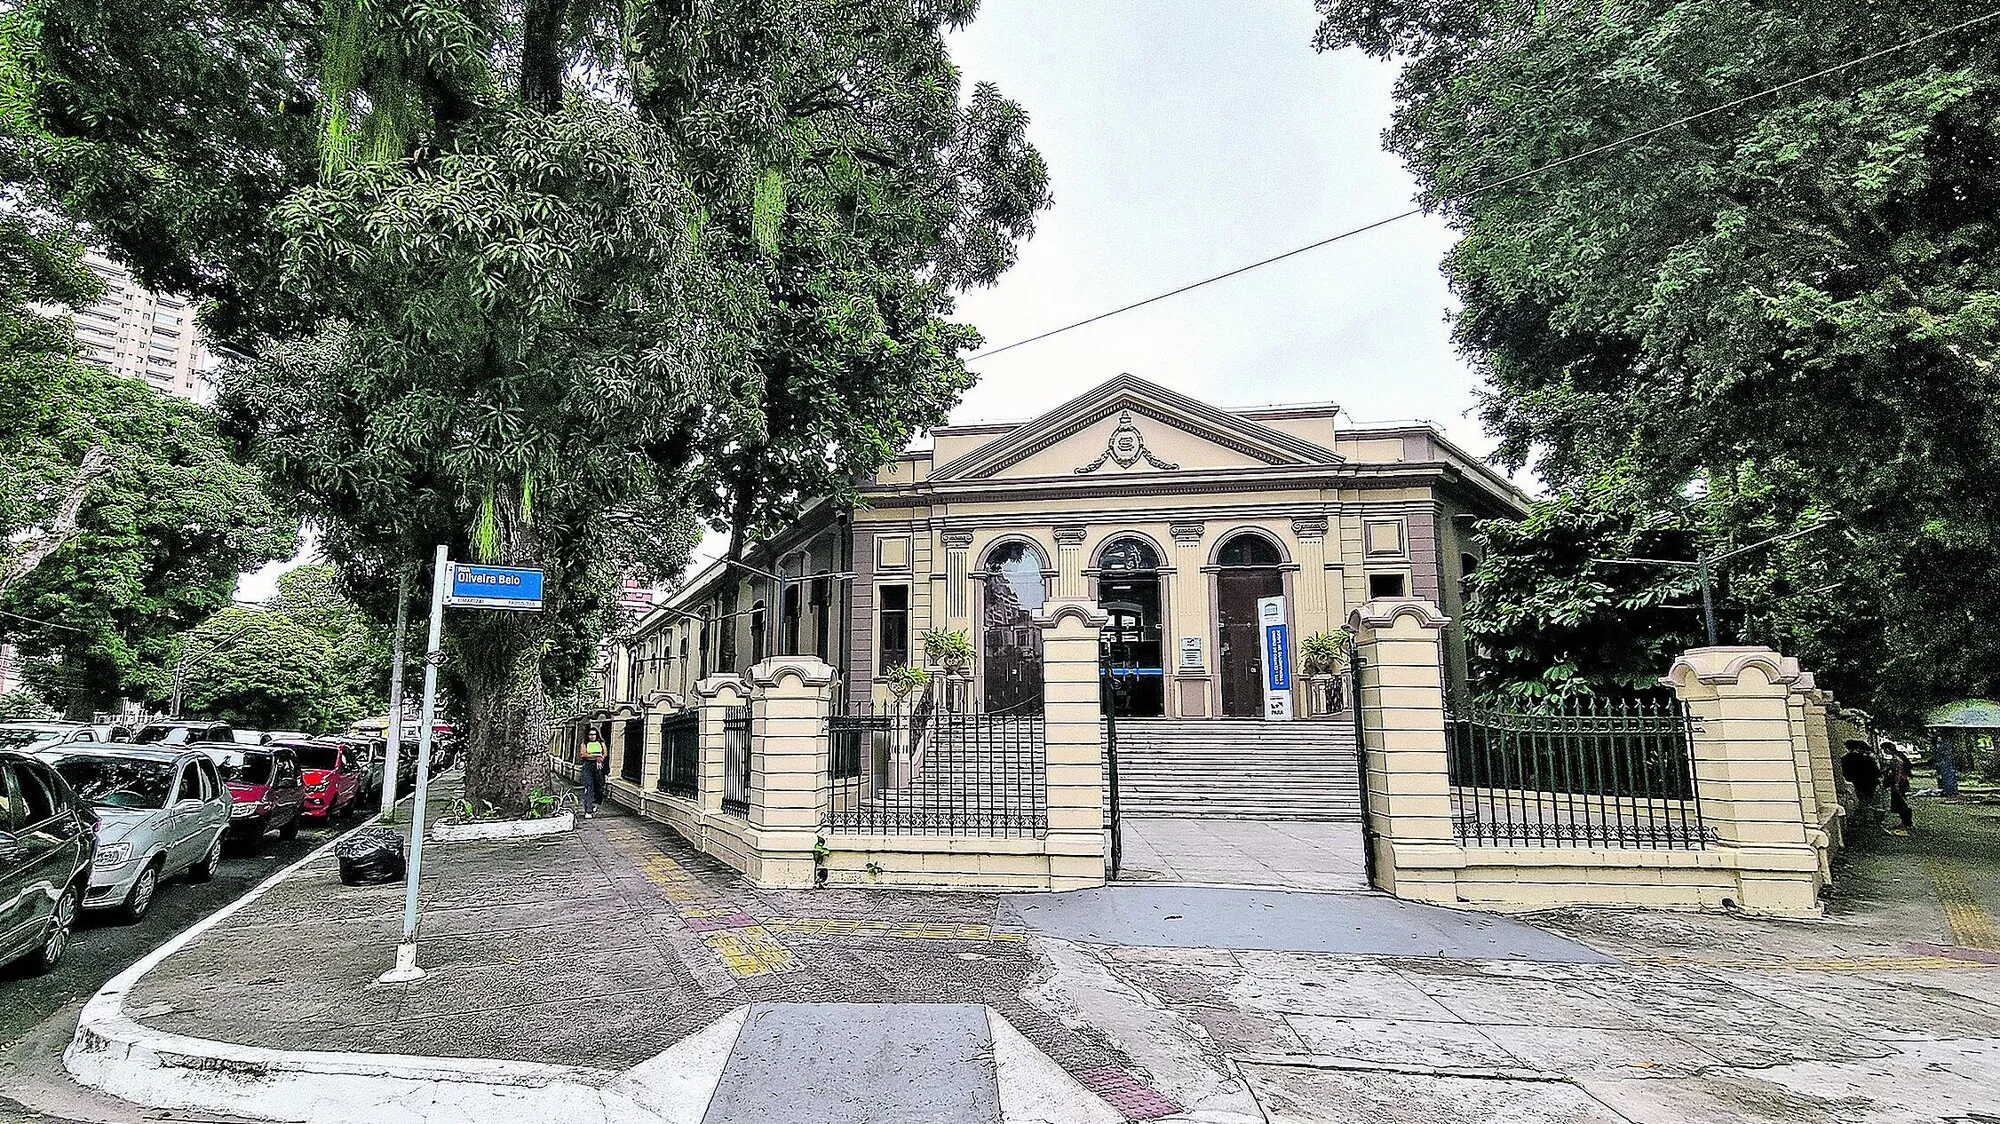 A Santa Casa foi fundada em 1650, sendo uma das primeiras instituições a estruturar os serviços de assistência à saúde no Brasil